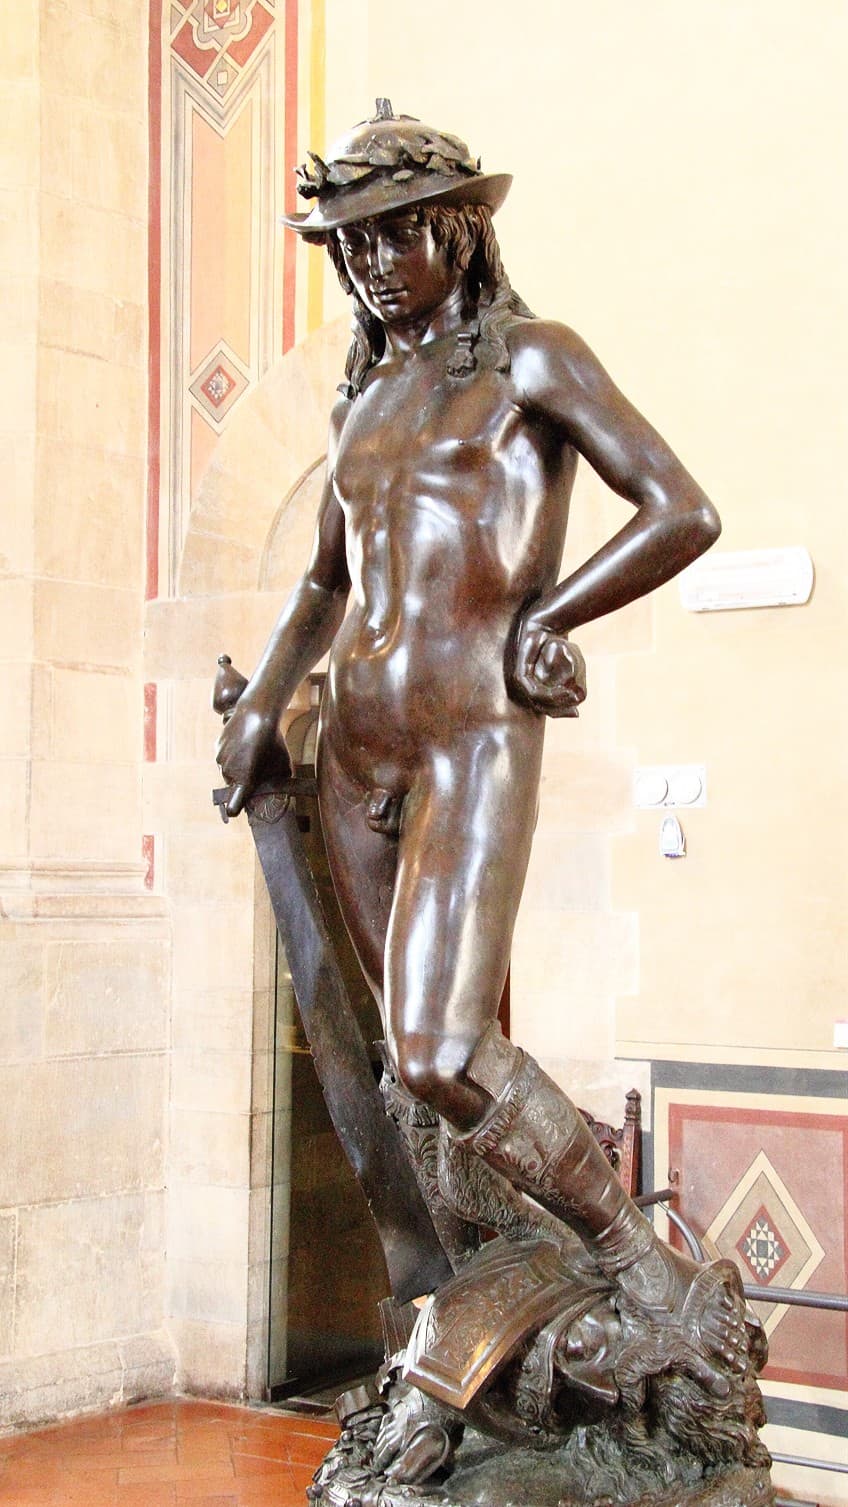 Sculpture in Florentine Artwork